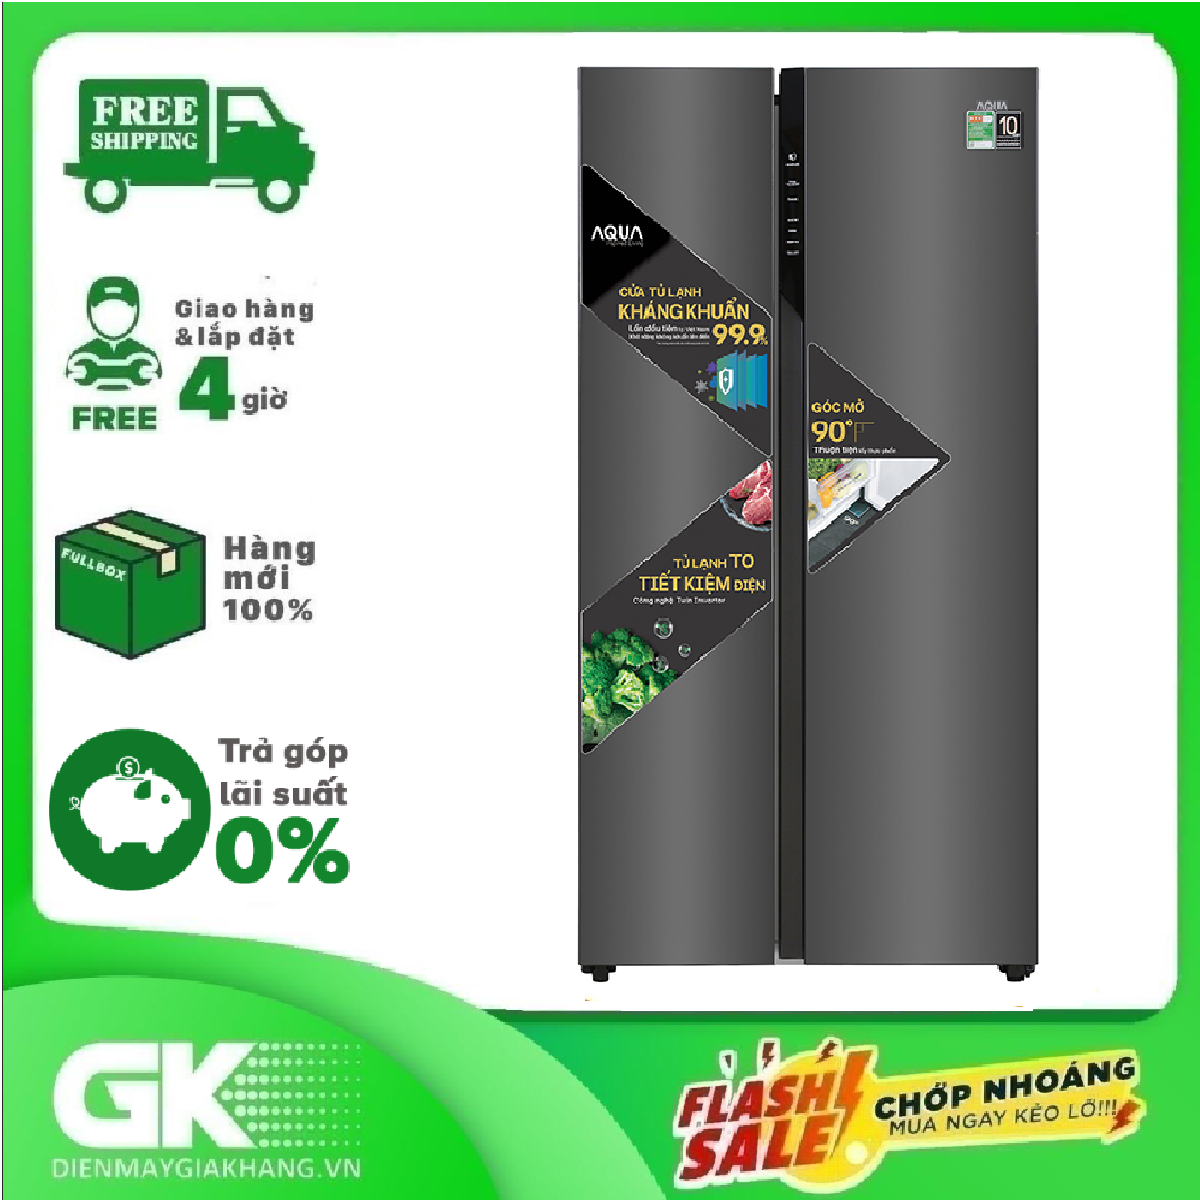 [Trả góp 0%]Tủ lạnh Aqua Inverter 541 lít AQR-S541XA(BL) Mới 2020